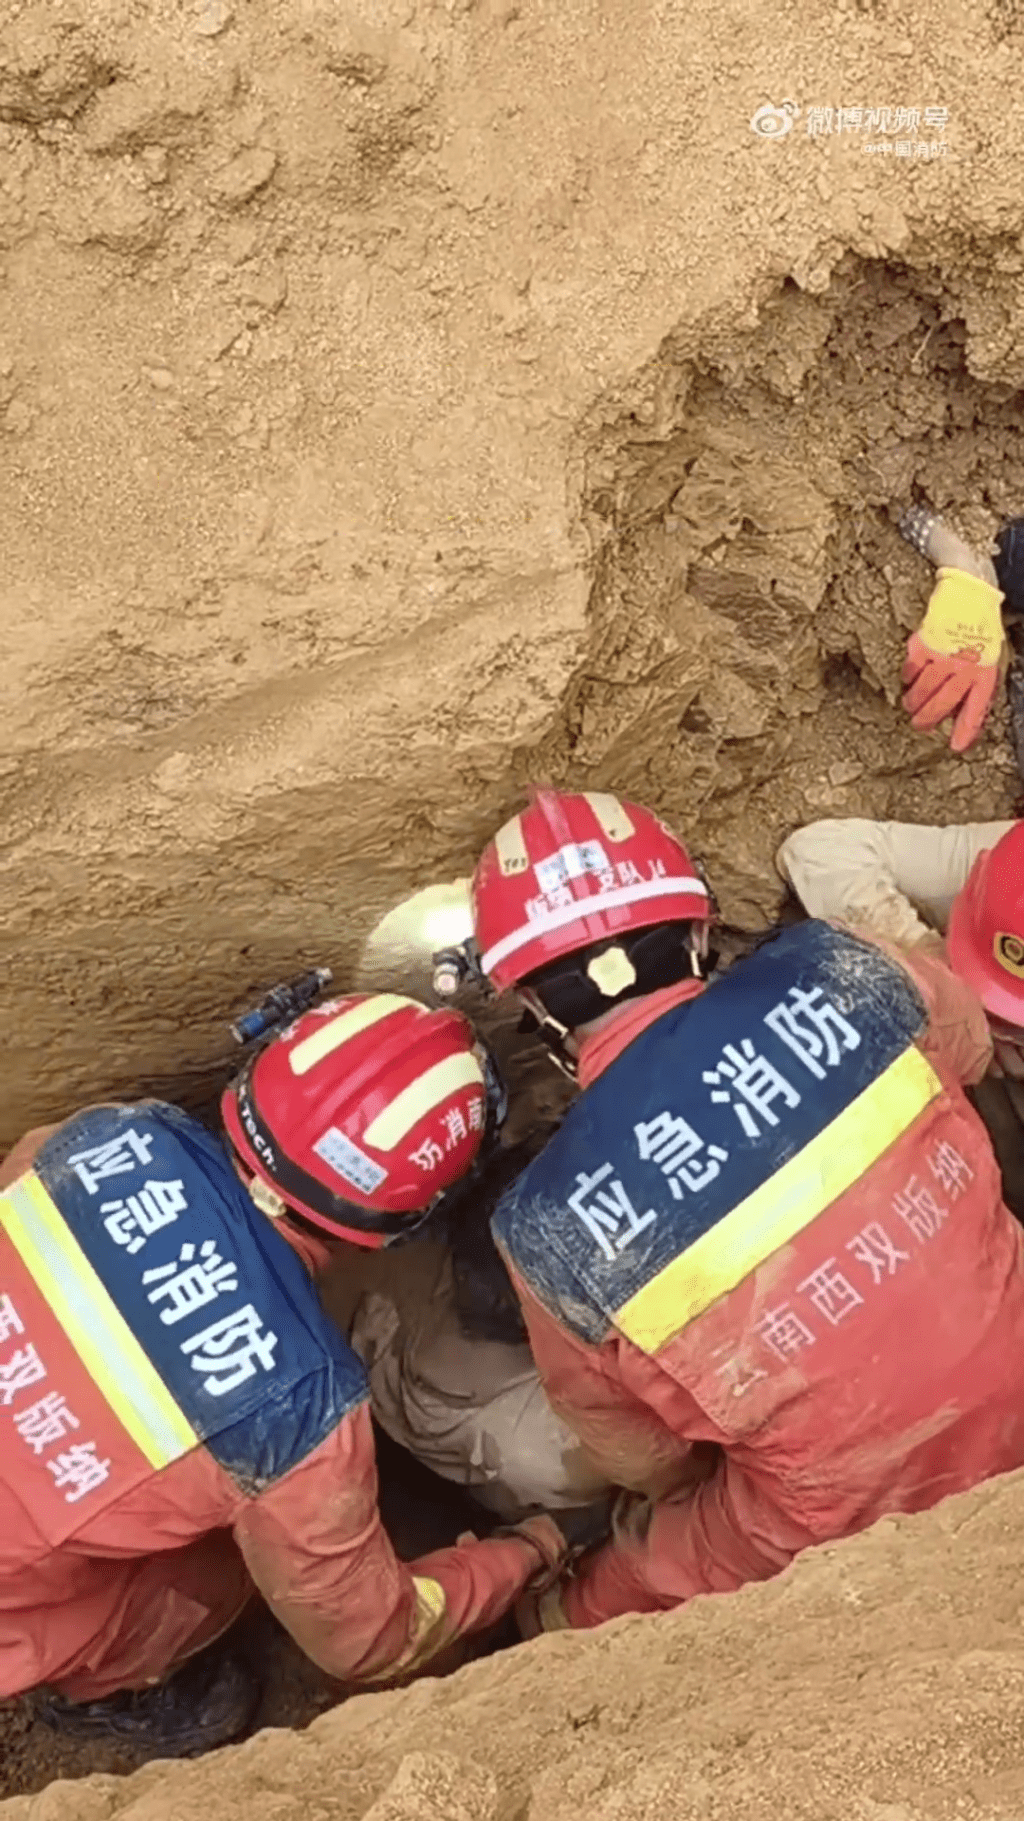 消防員現場搶救被困人士。 中國消防